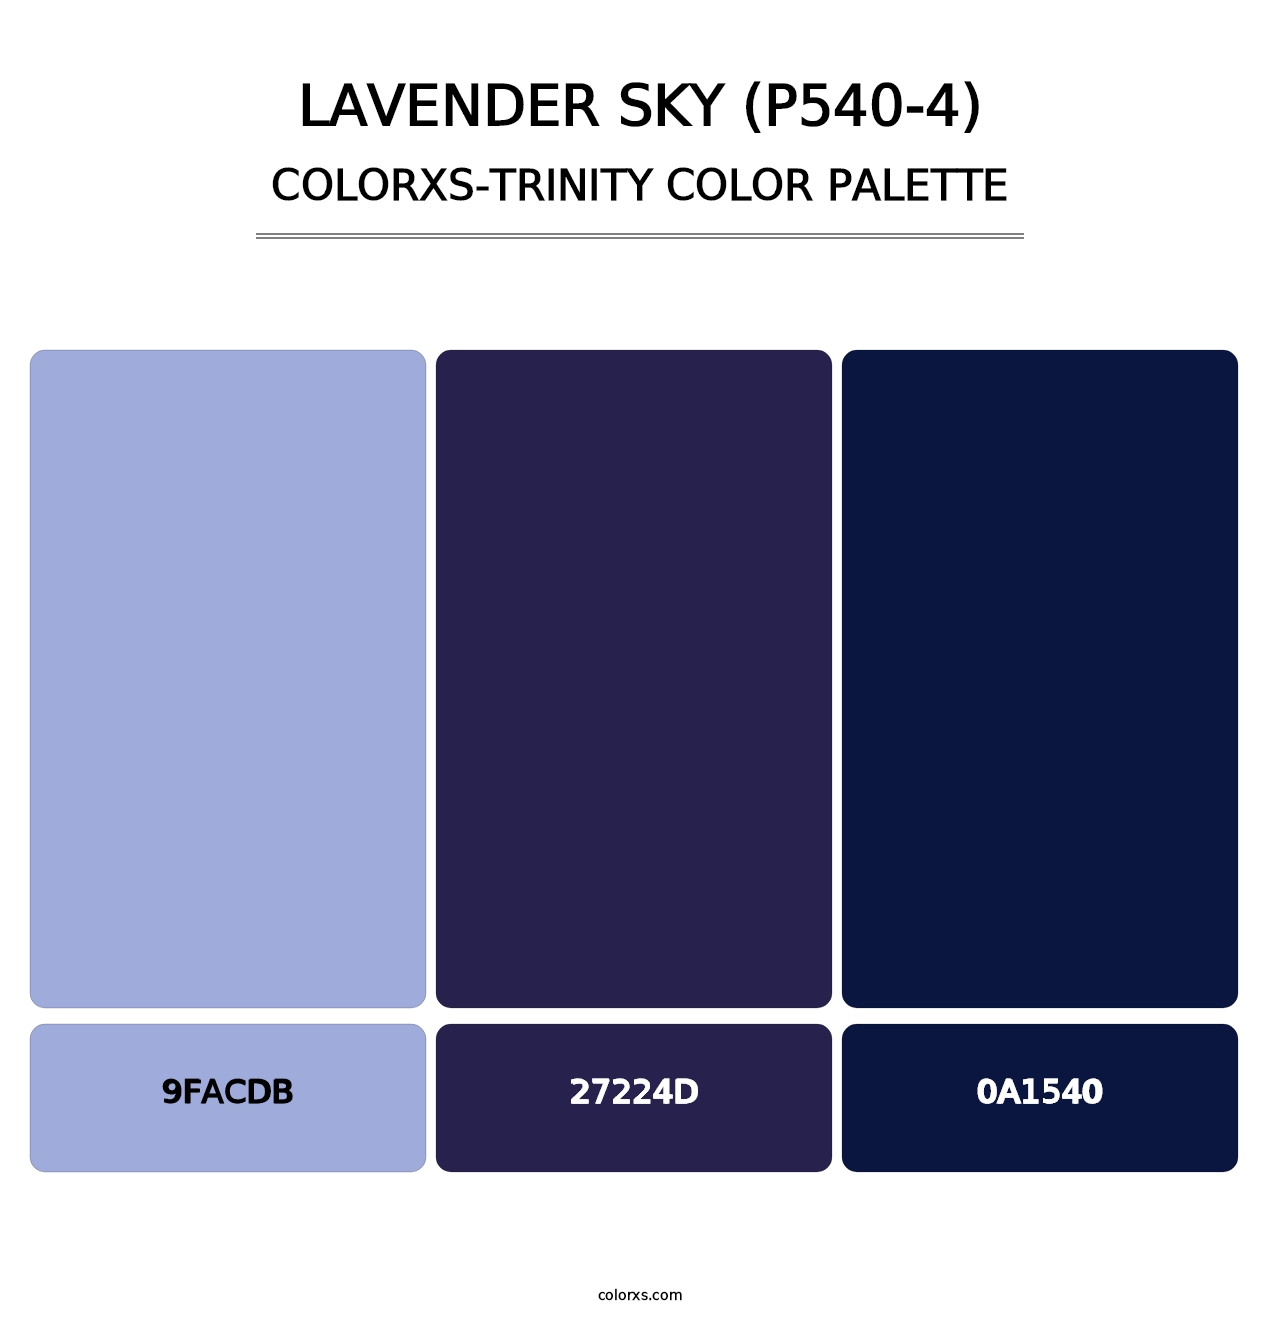 Lavender Sky (P540-4) - Colorxs Trinity Palette